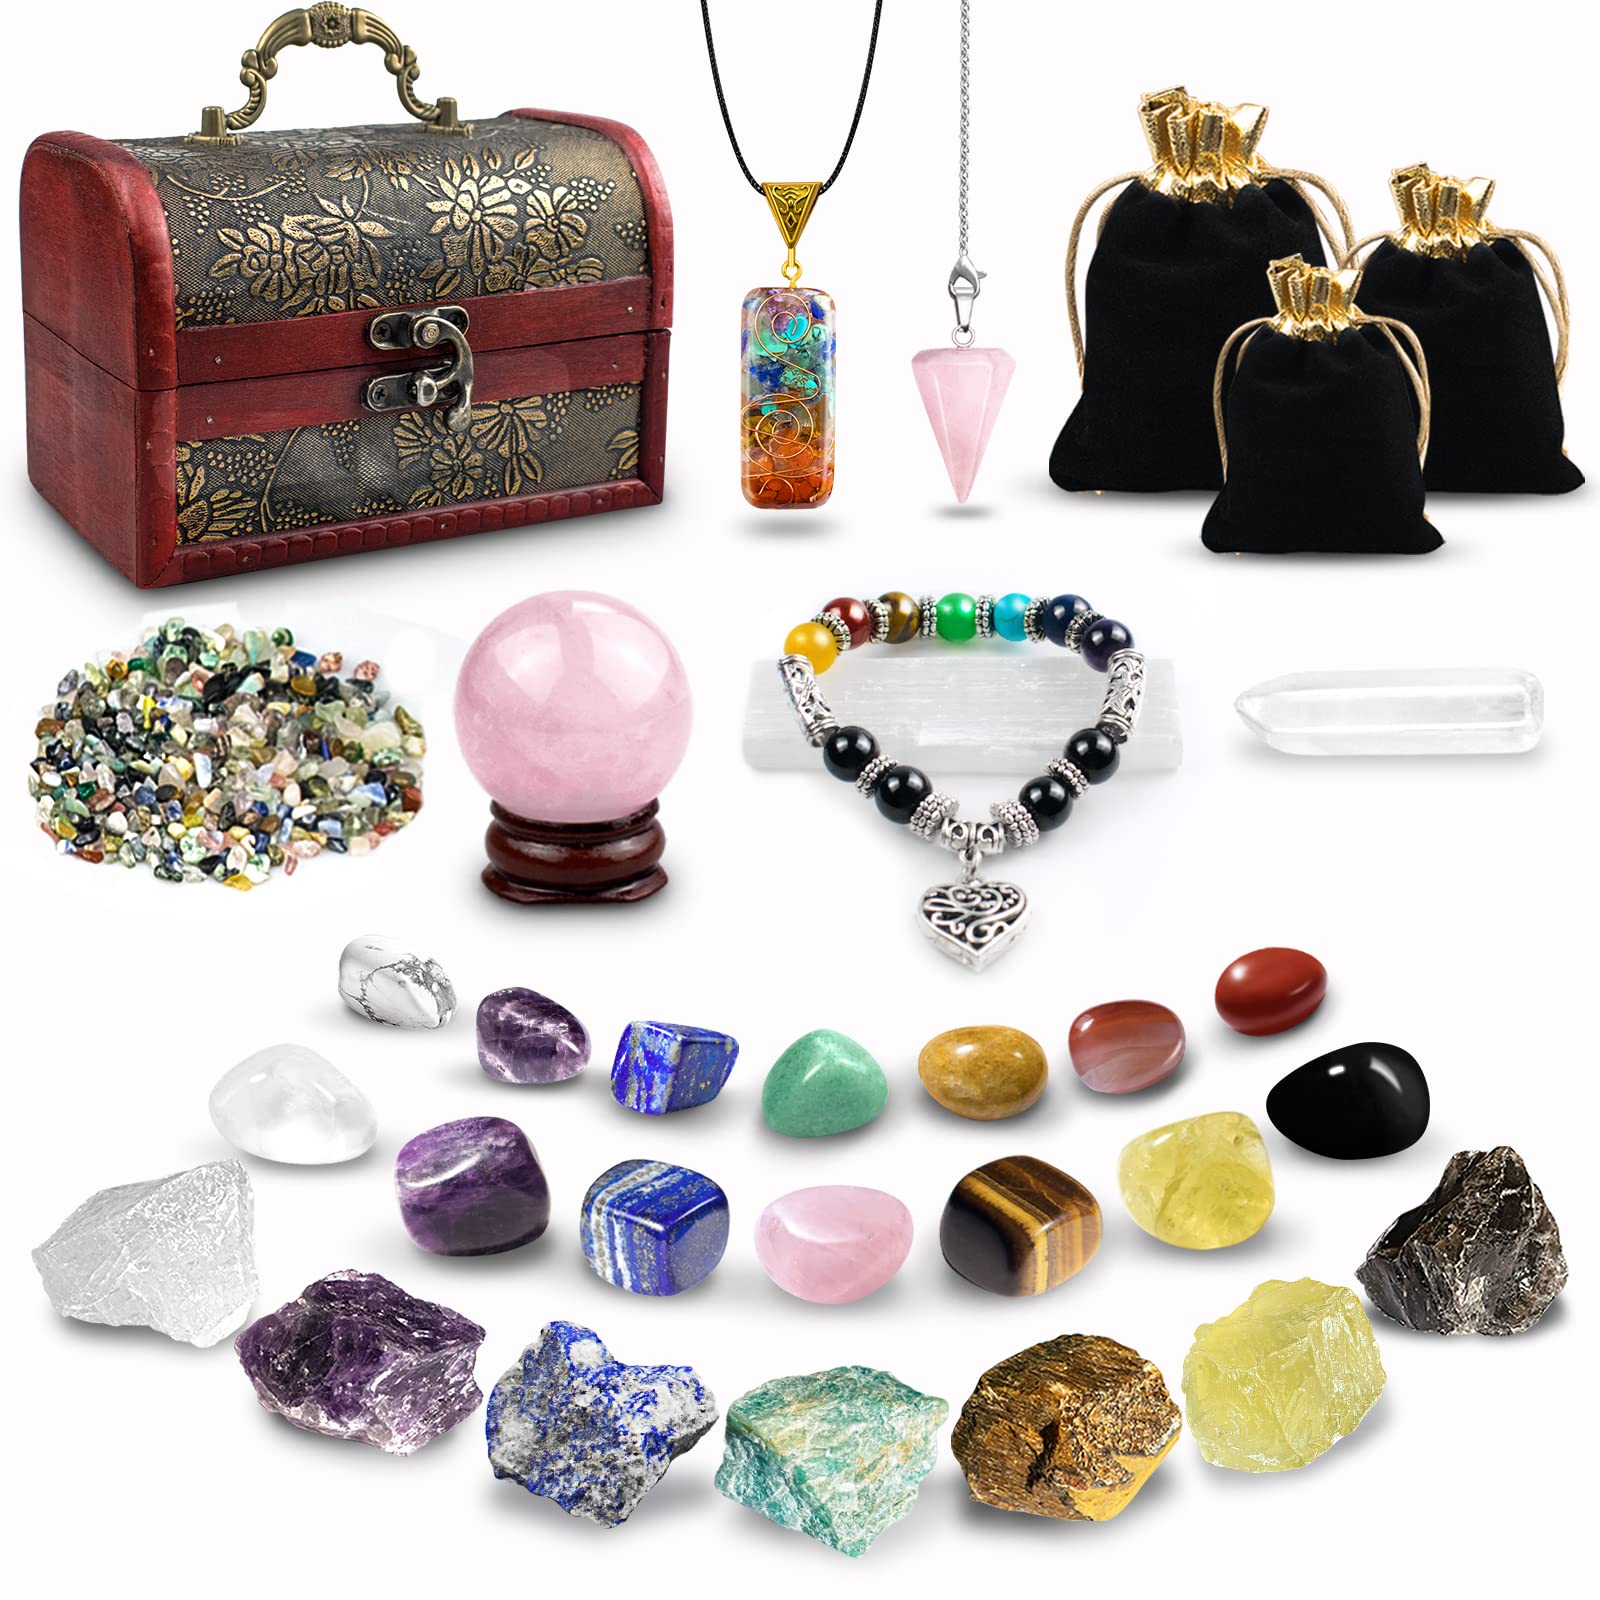 Healing Crystals Set, 28 Pcs Real Crystals and Healing Stones Kit